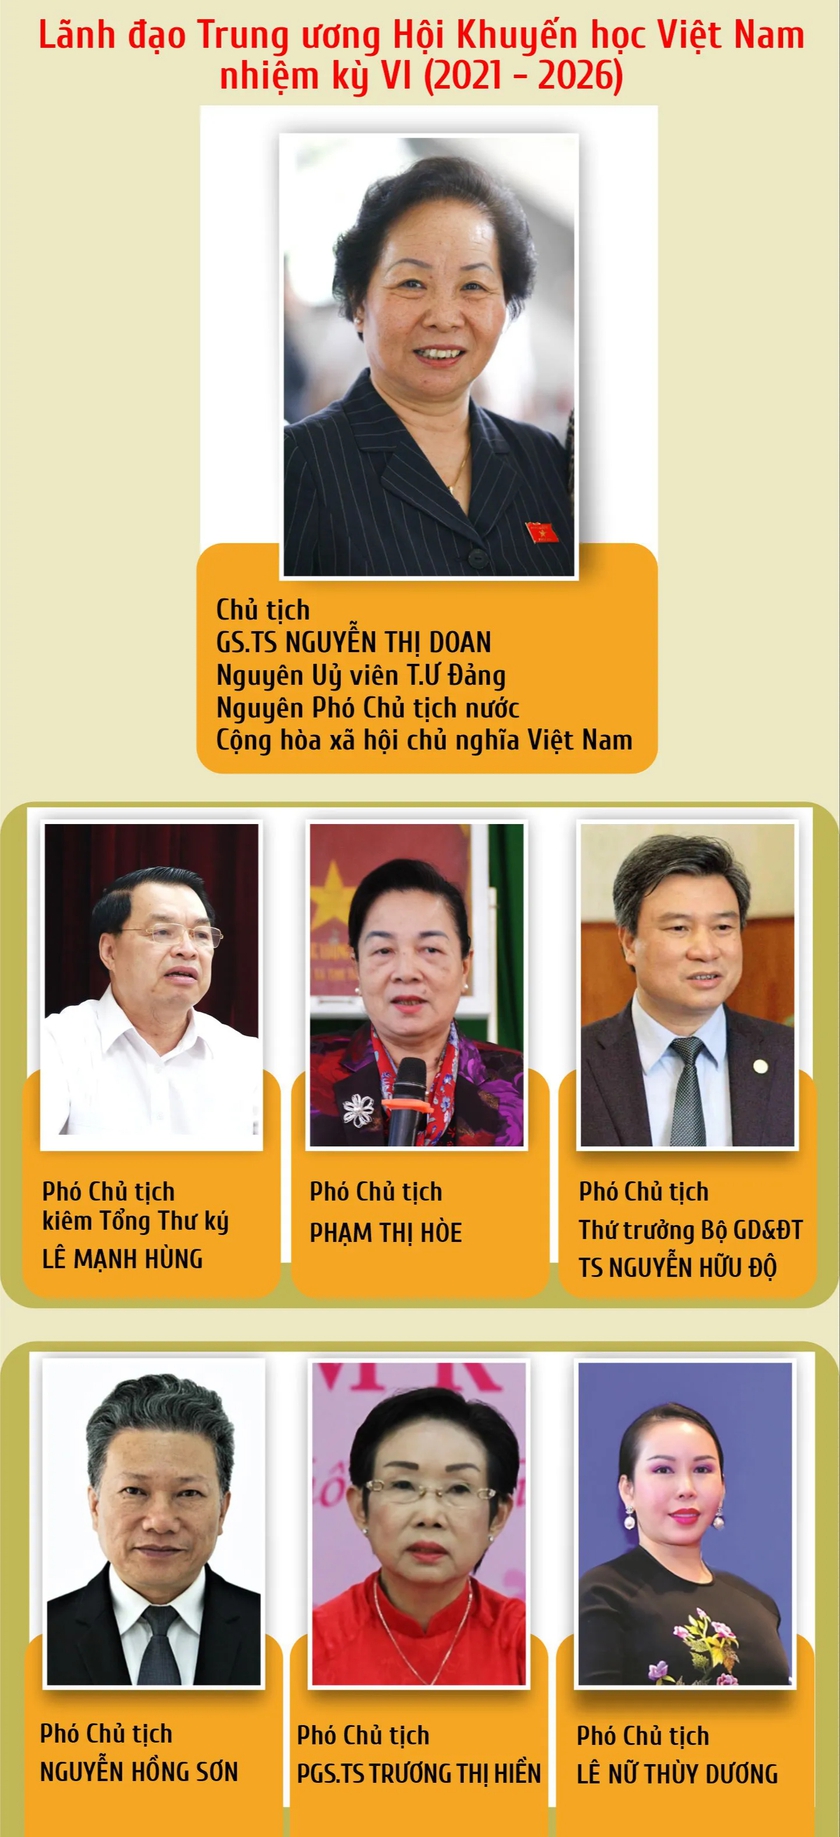 Lãnh đạo Trung ương Hội Khuyến học Việt Nam nhiệm kỳ VI (2021-2026)- Ảnh 1.